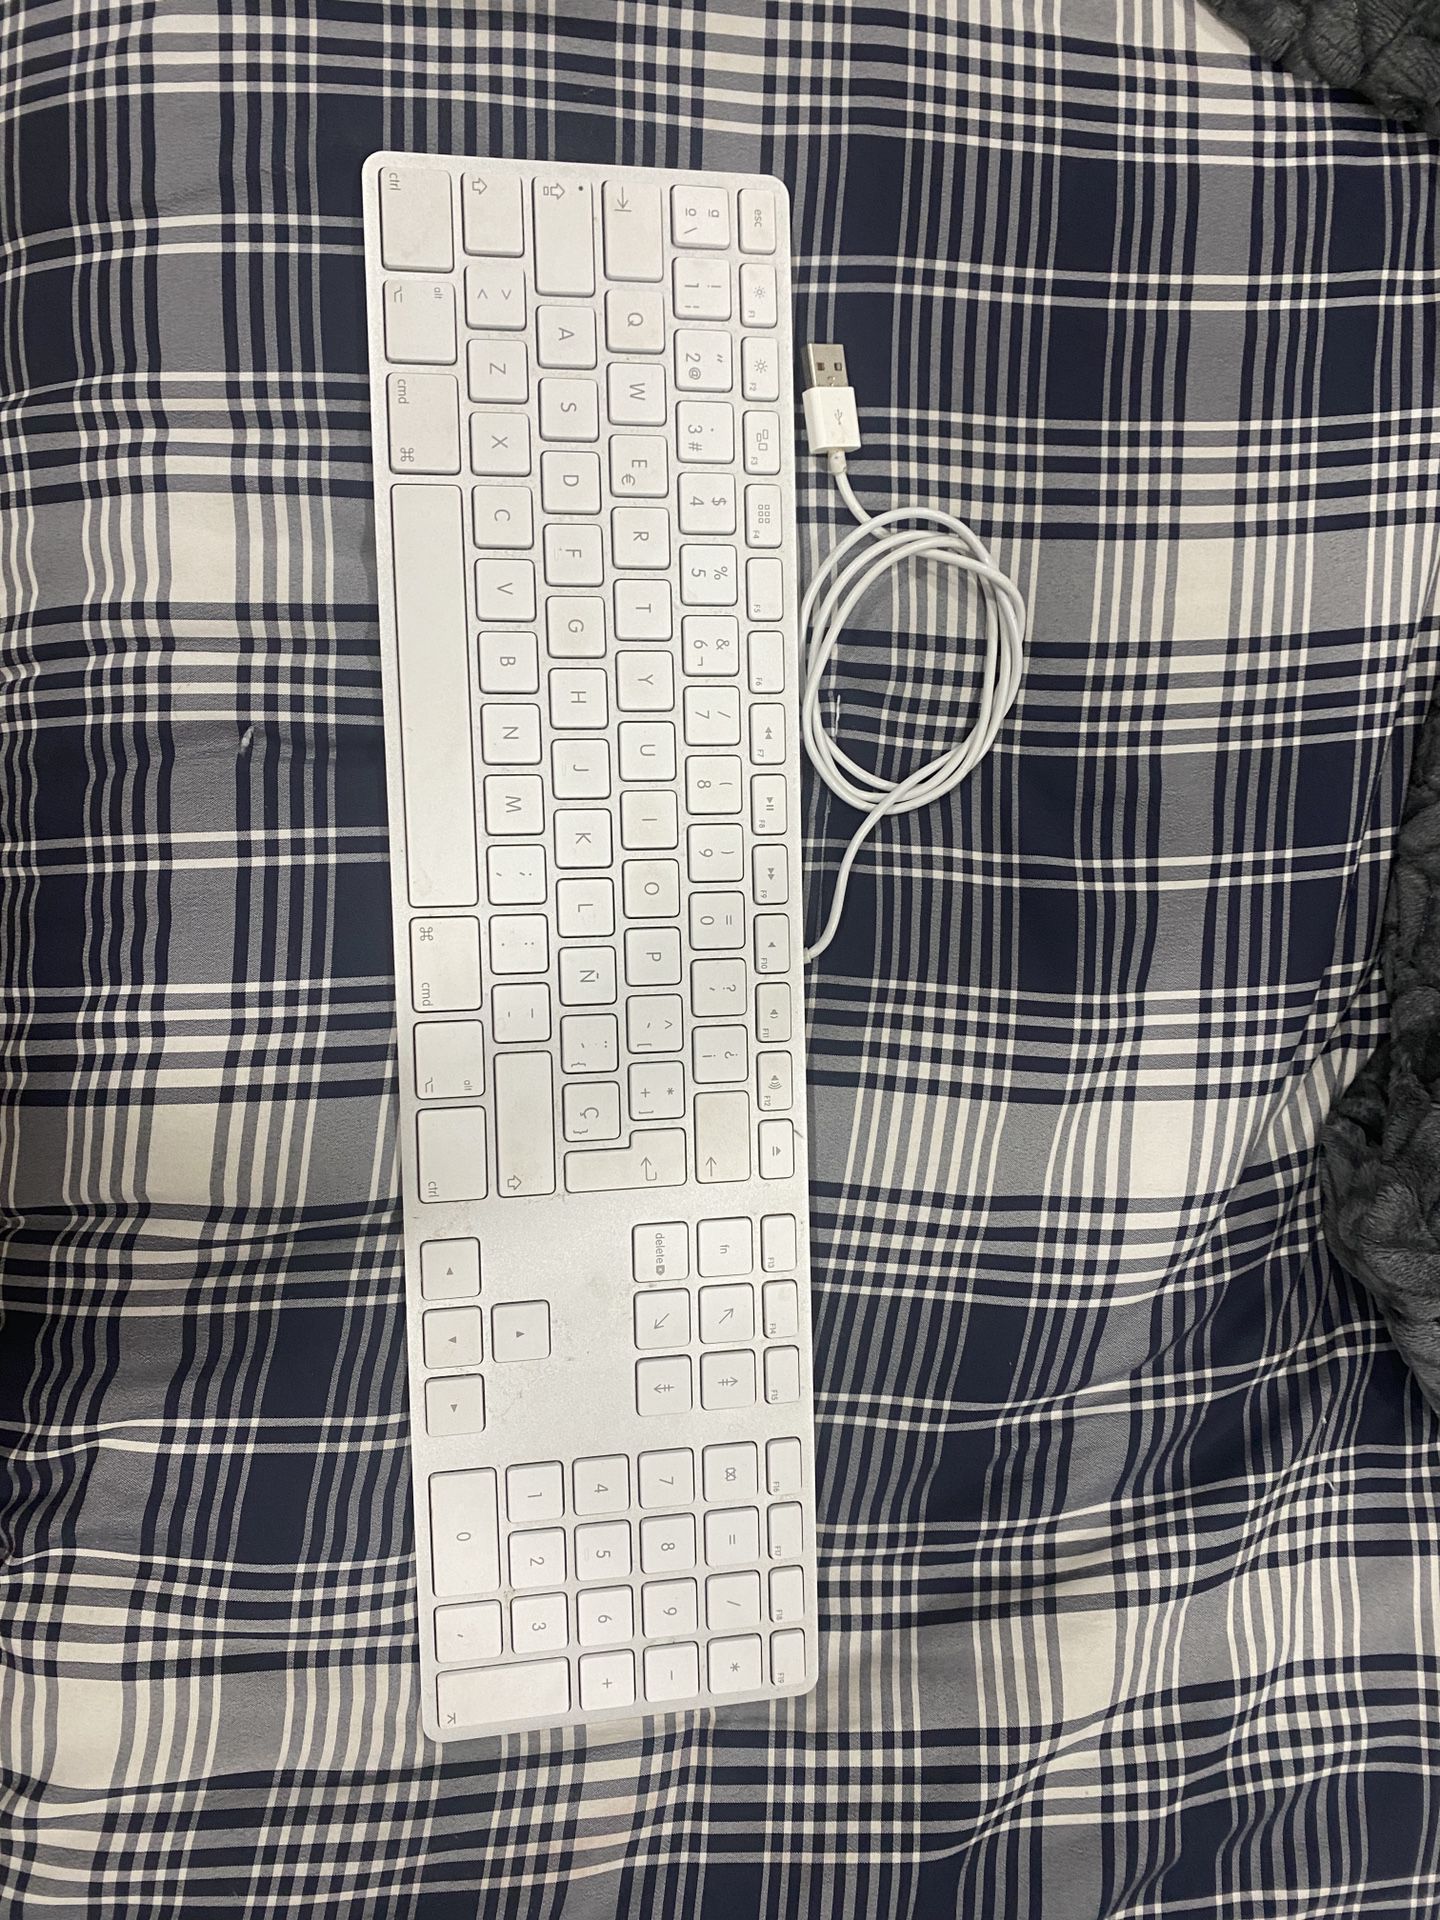 Apple Wire Keyboard